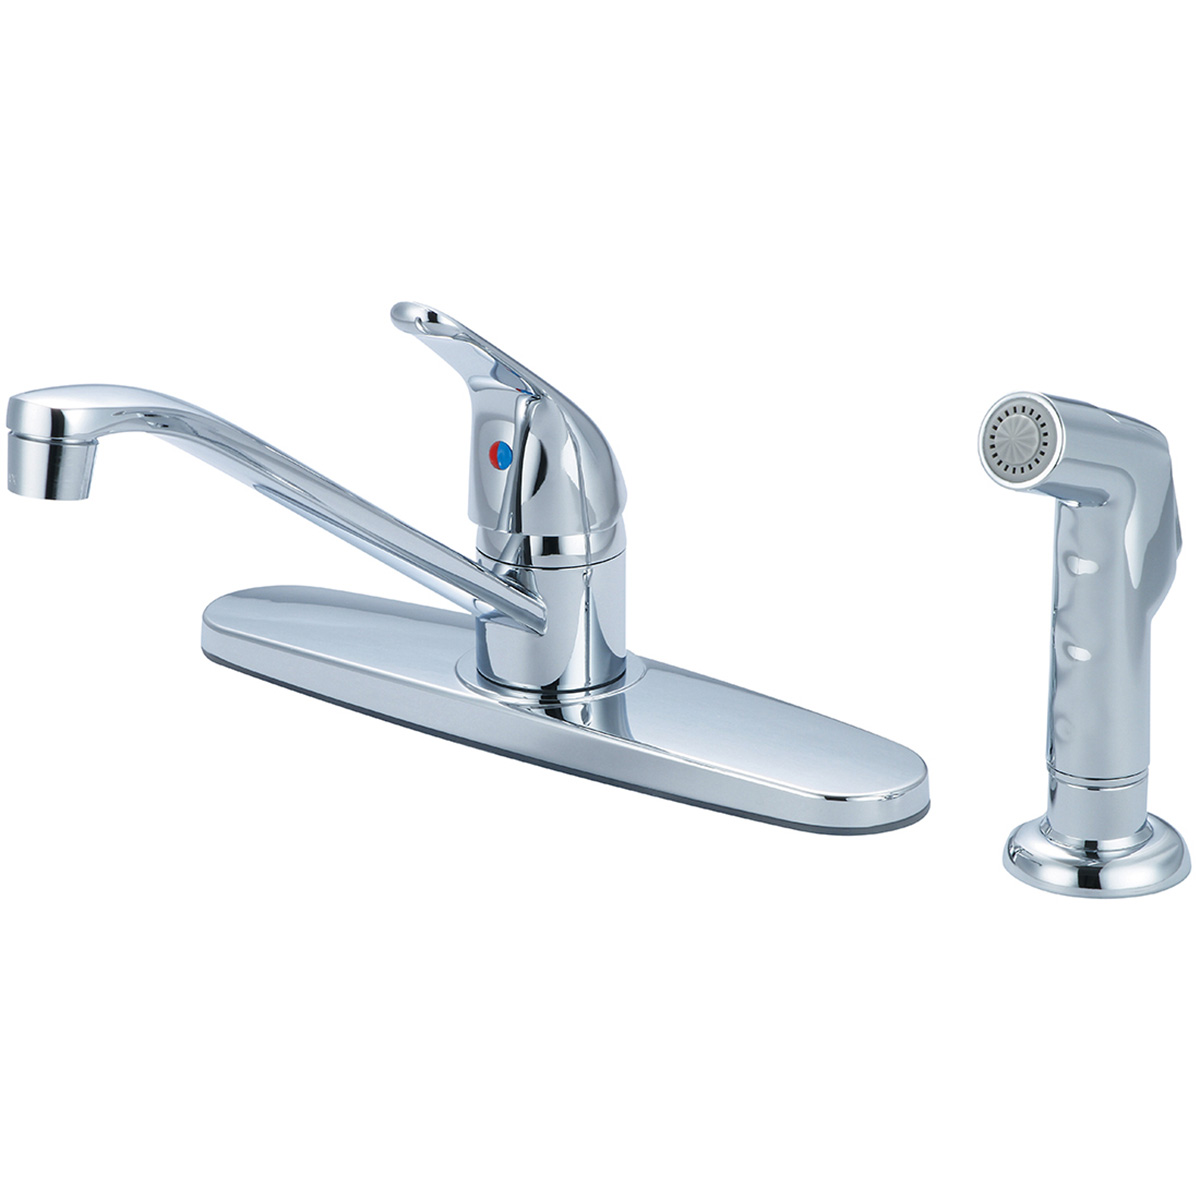 K-4162 Single Handle Kitchen Faucet - Chrome